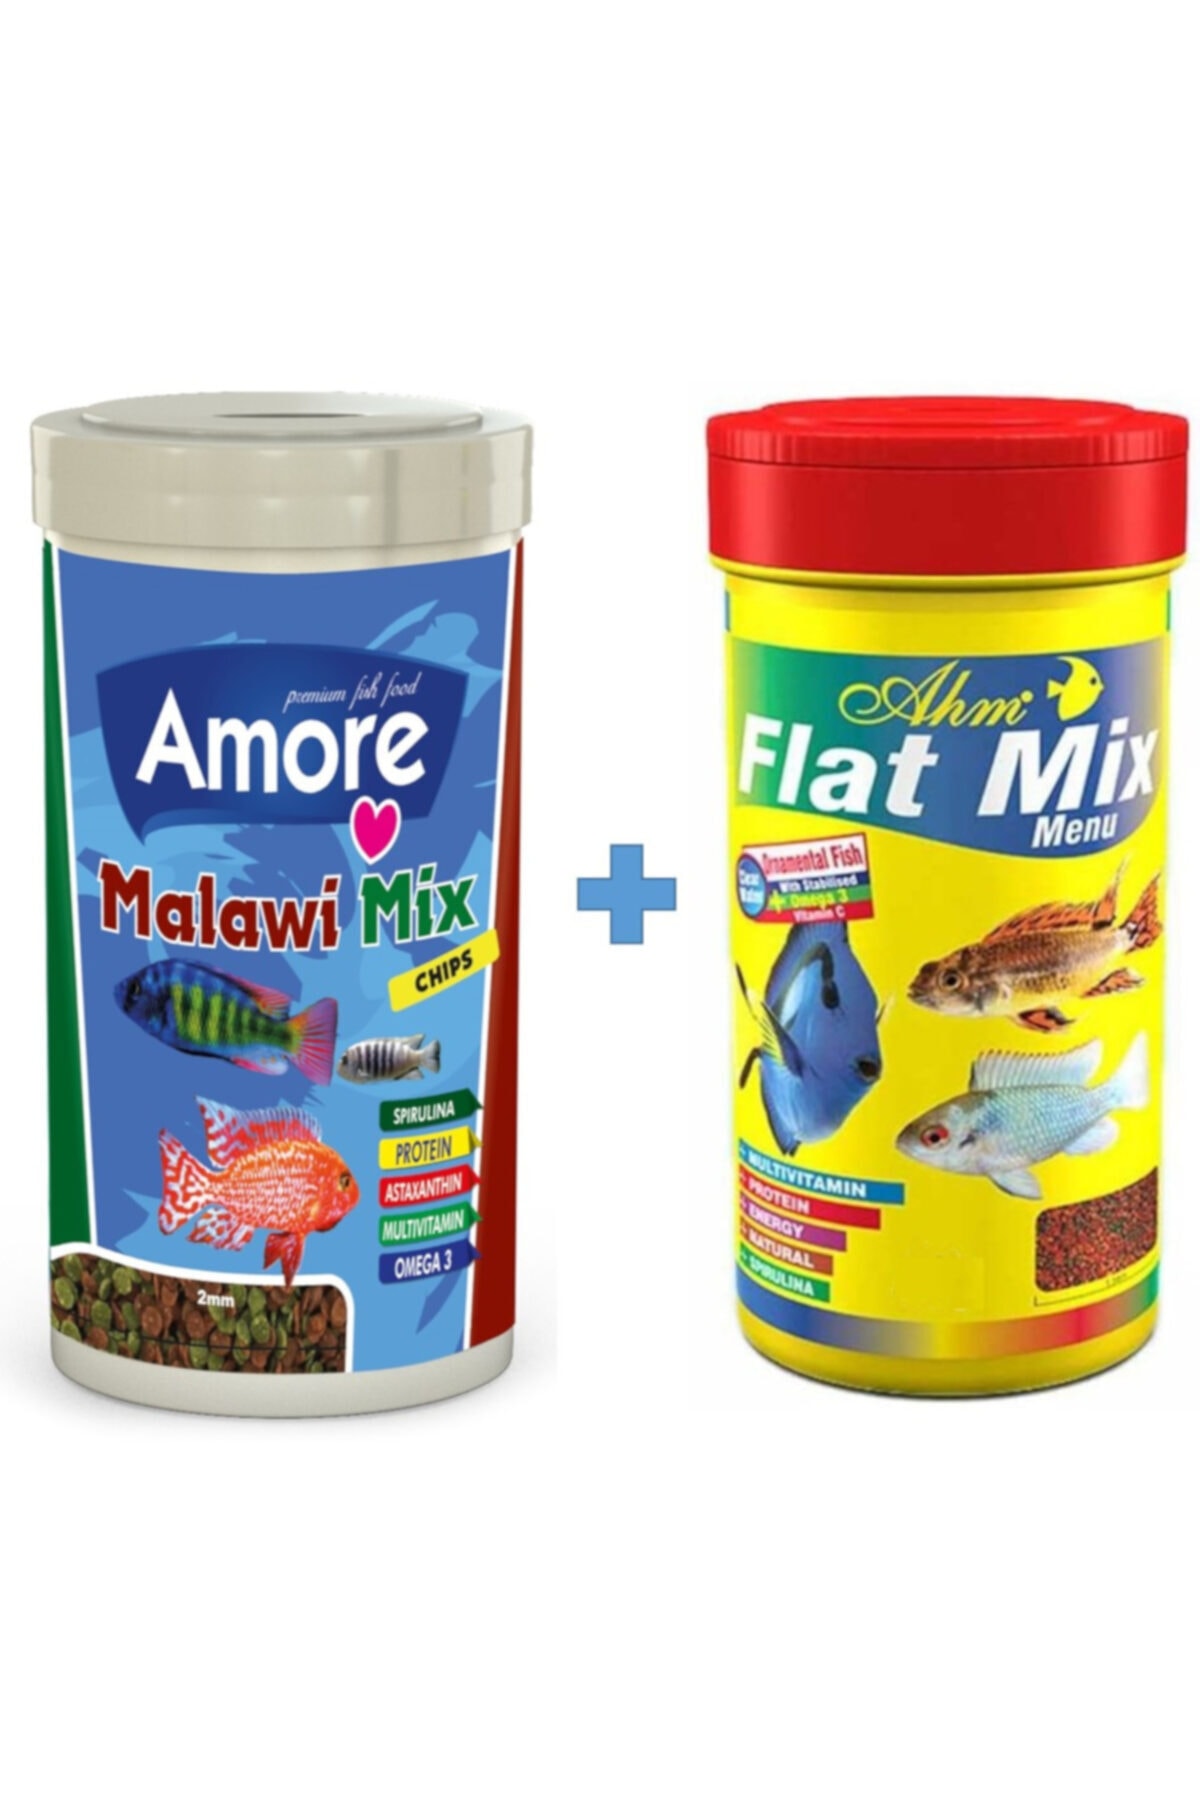 Amore Malawi Mix Chips 1000ml Ve Ahm Flat Mix 1000ml Kutu Balık Yemi